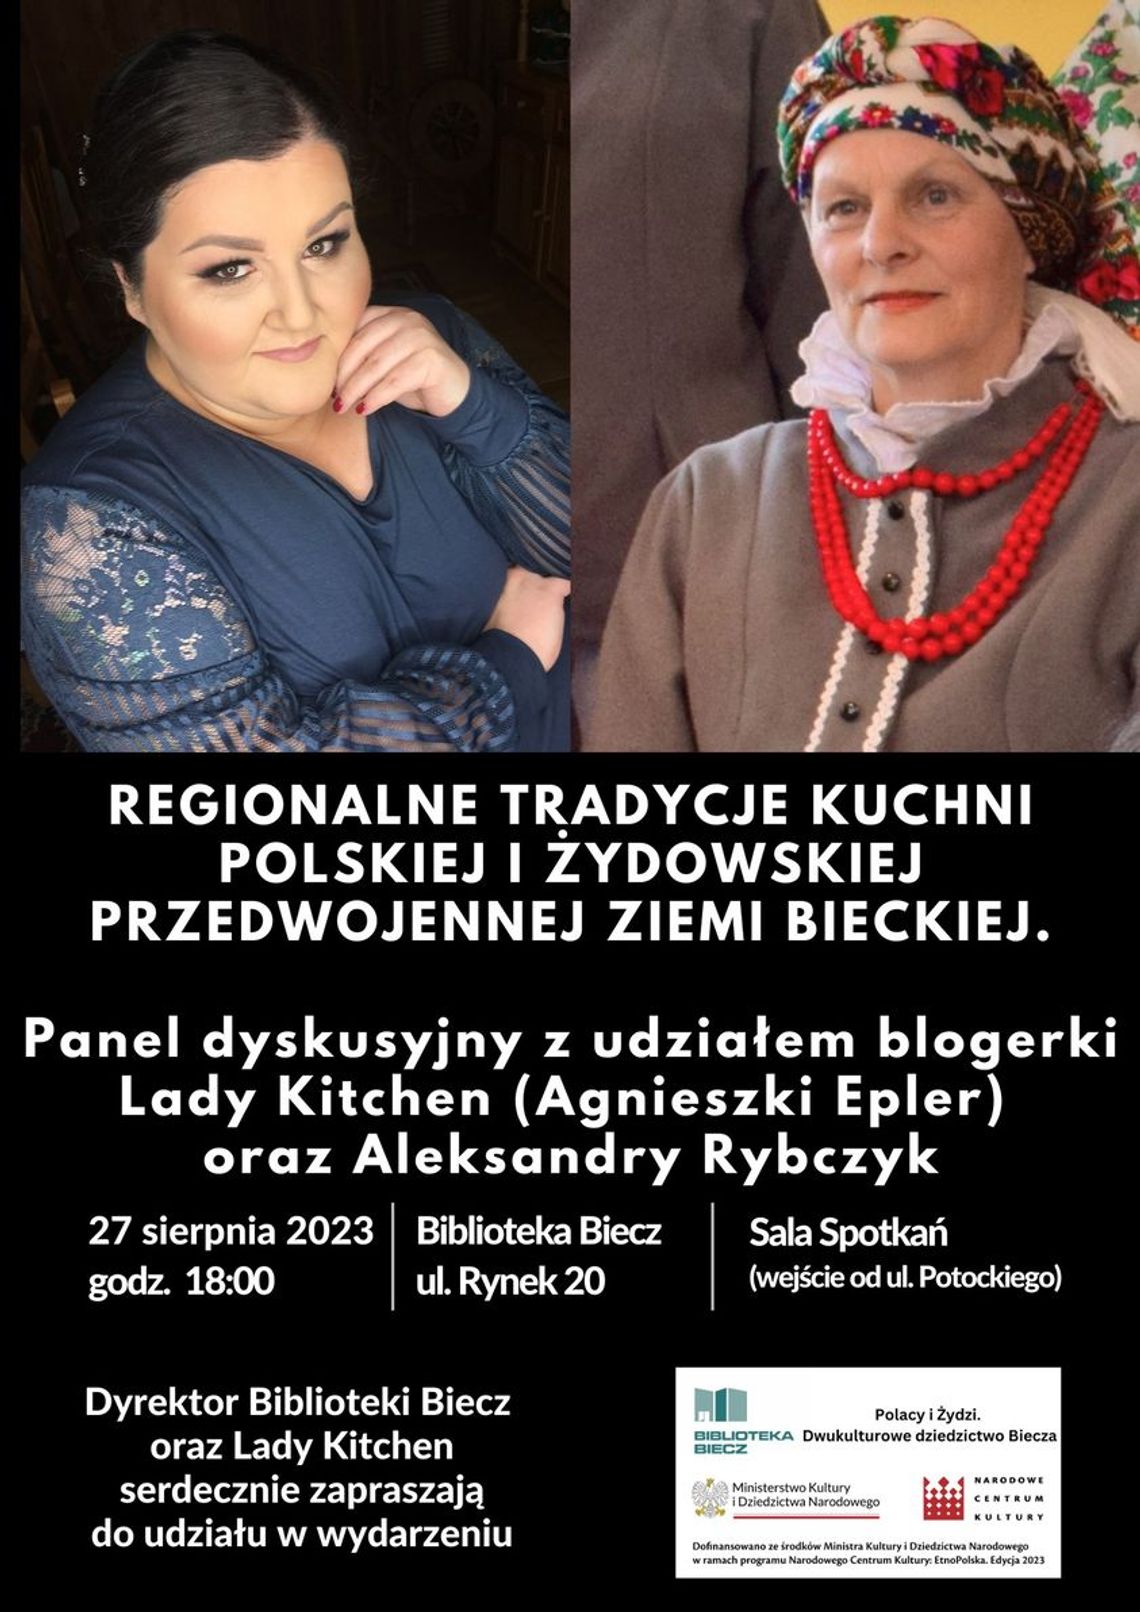 Regionalne tradycje kuchni polskiej i żydowskiej – Biblioteka Biecz | halogorlice.info